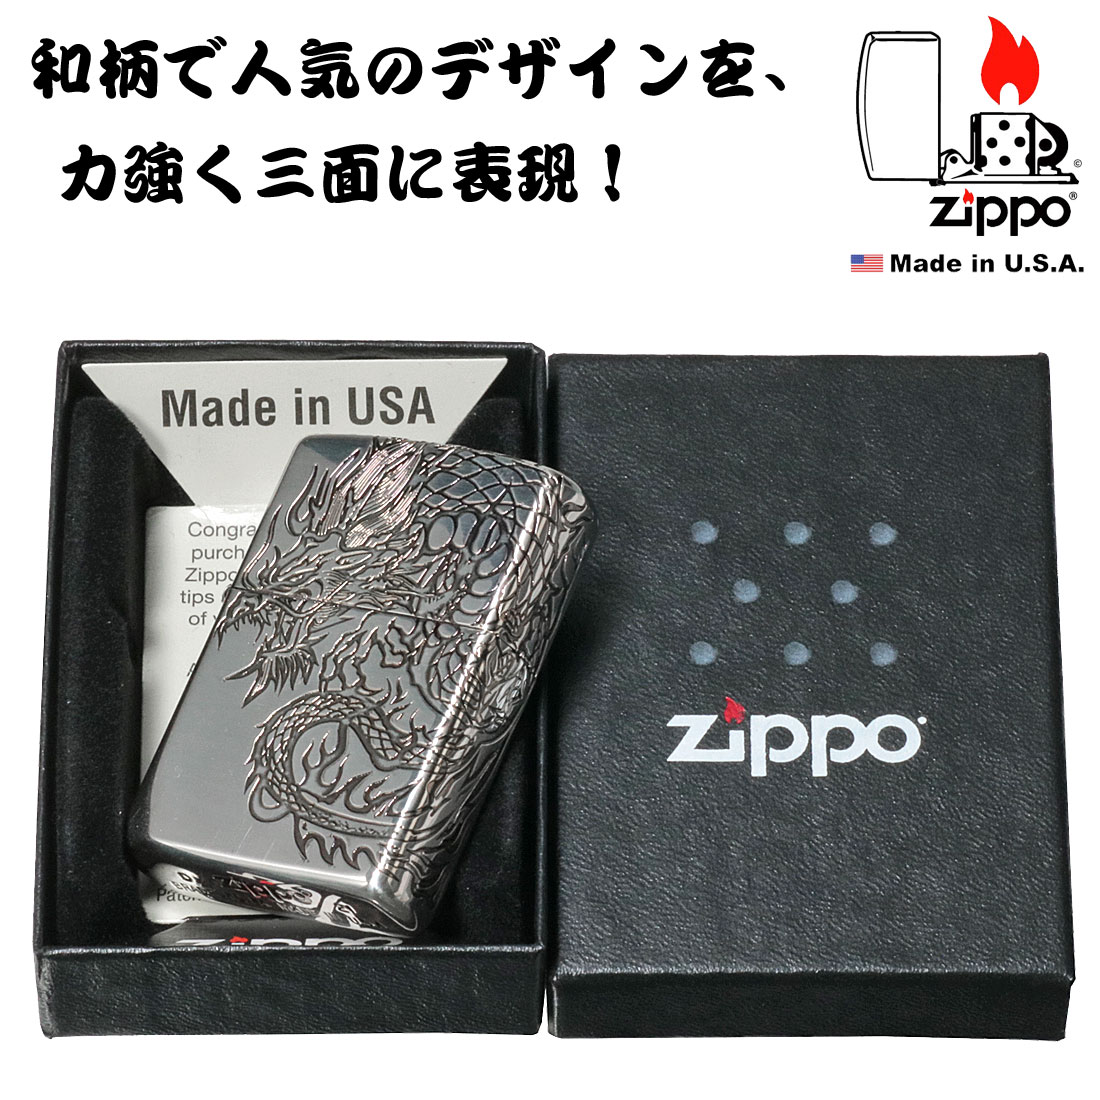 お買い得品 ZIPPO ジッポーライター 和柄 3面連続彫刻 龍 ドラゴン 銀